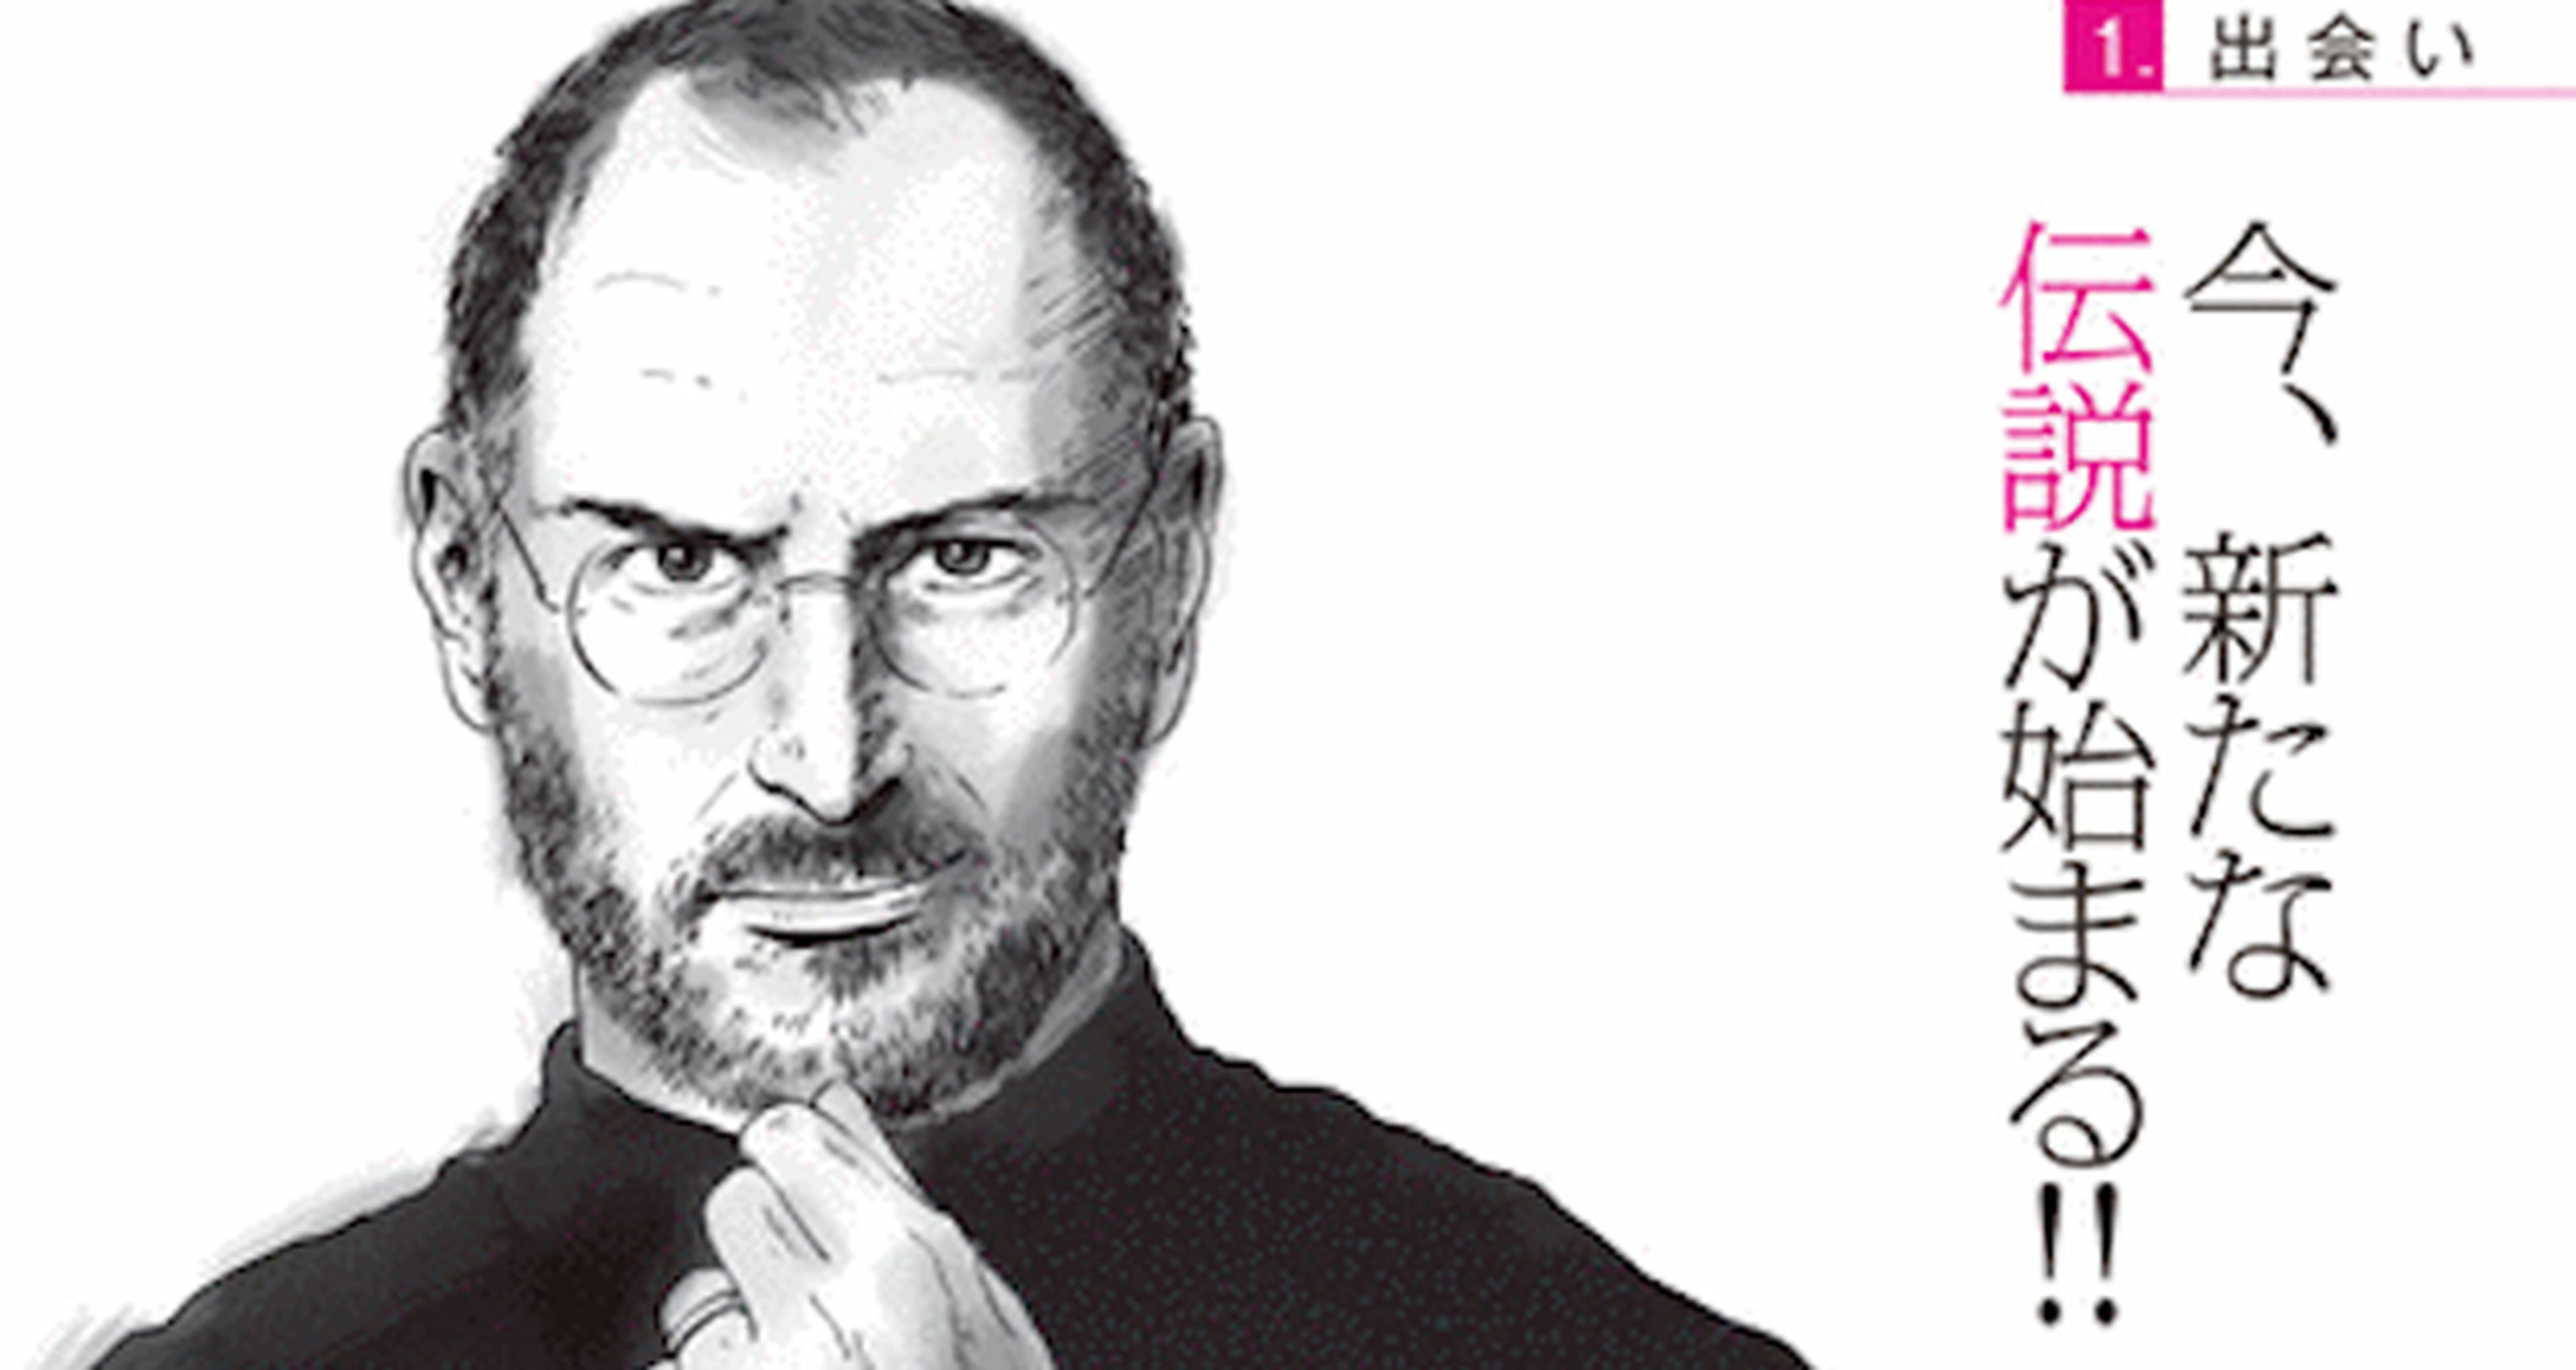 Avance del manga de Steve Jobs